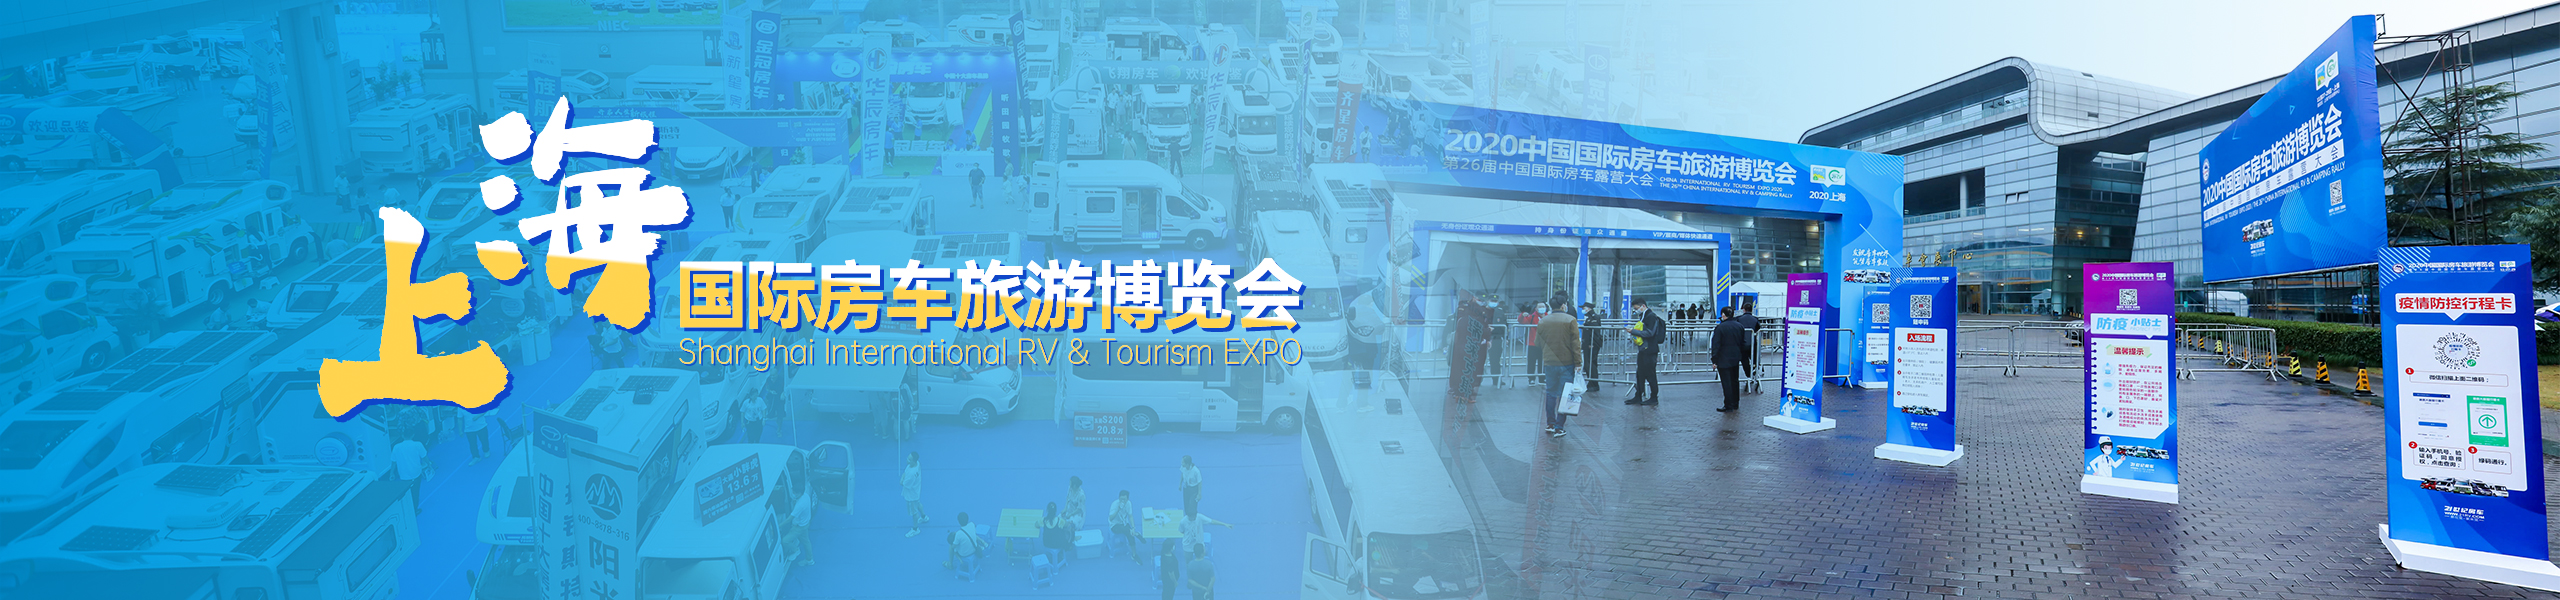 上海国际房车旅游博览会-152